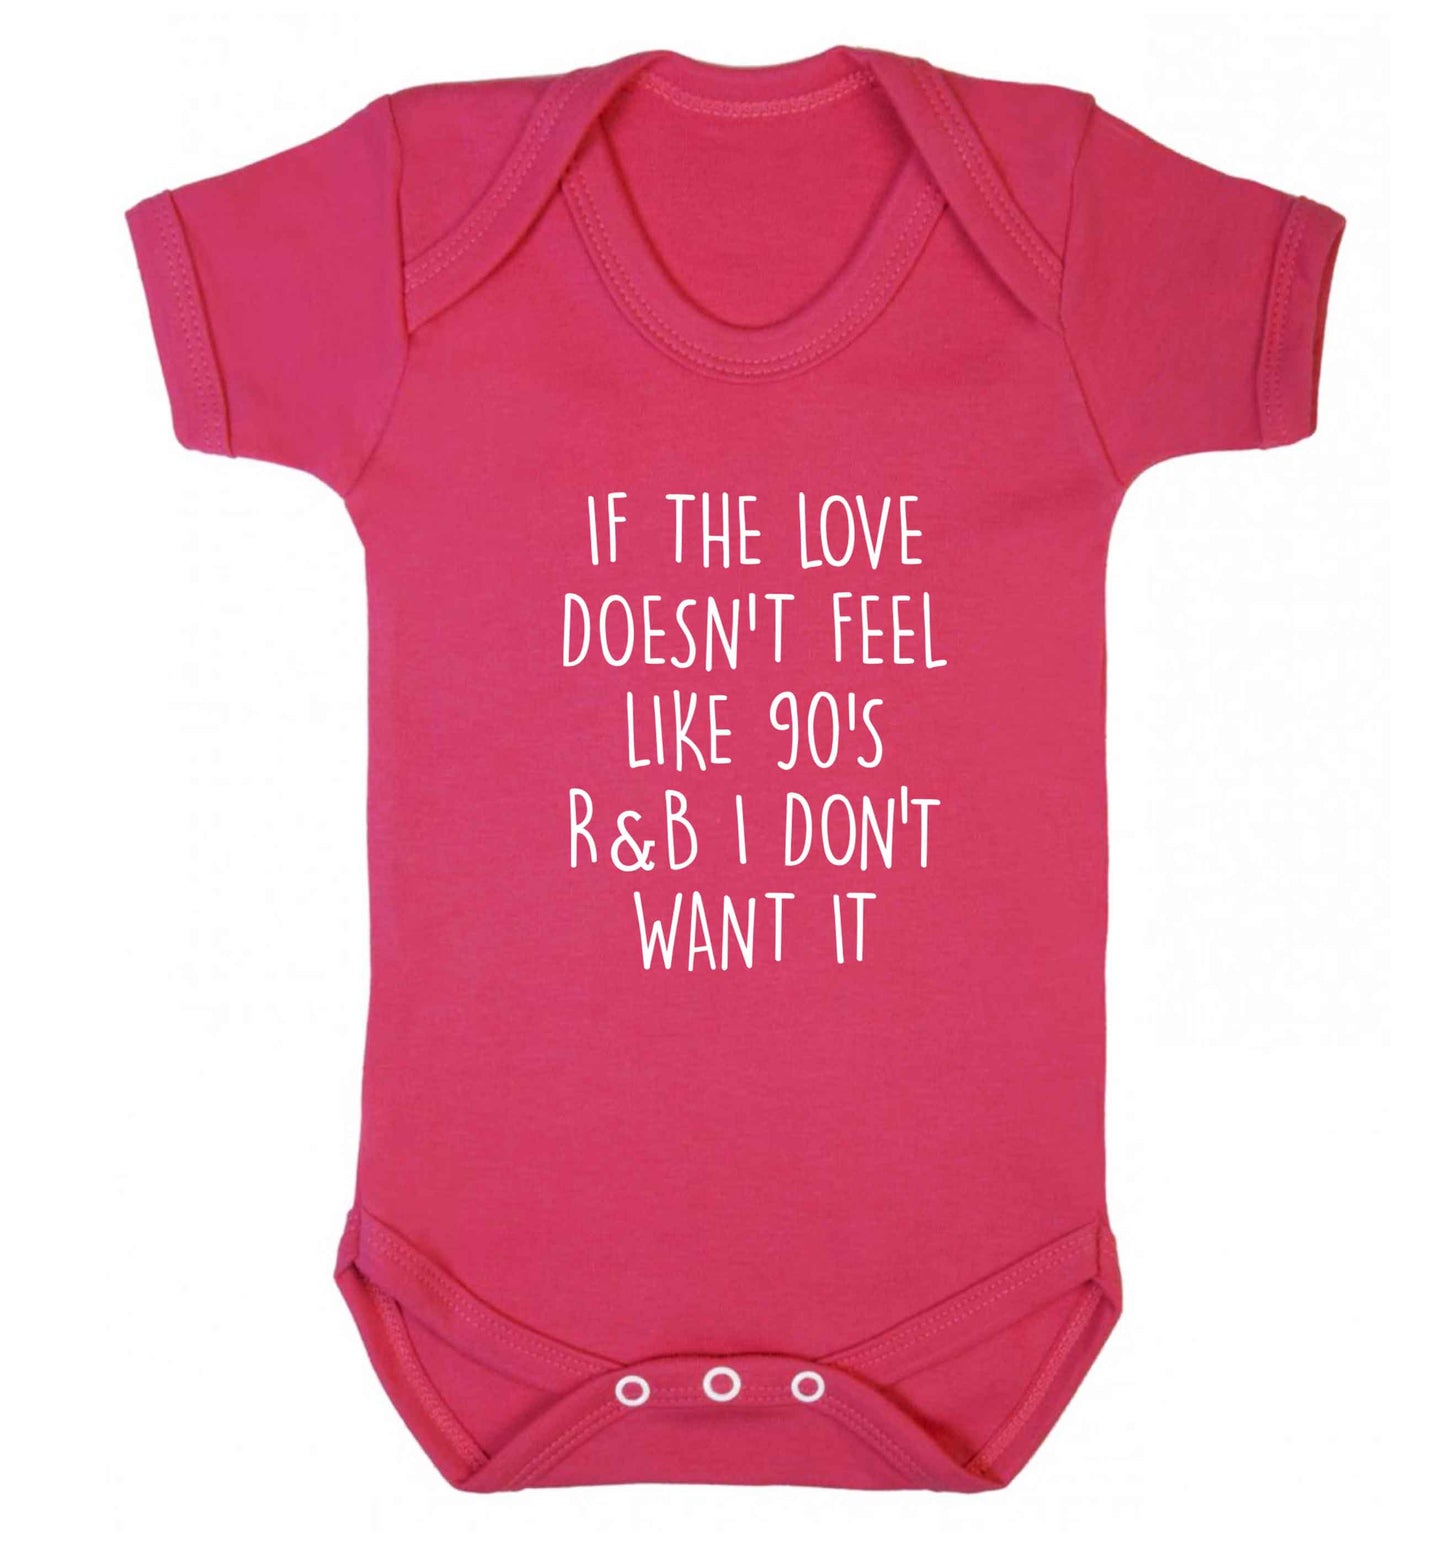 If the love doesn't feel like 90's r&b I don't want it baby vest dark pink 18-24 months